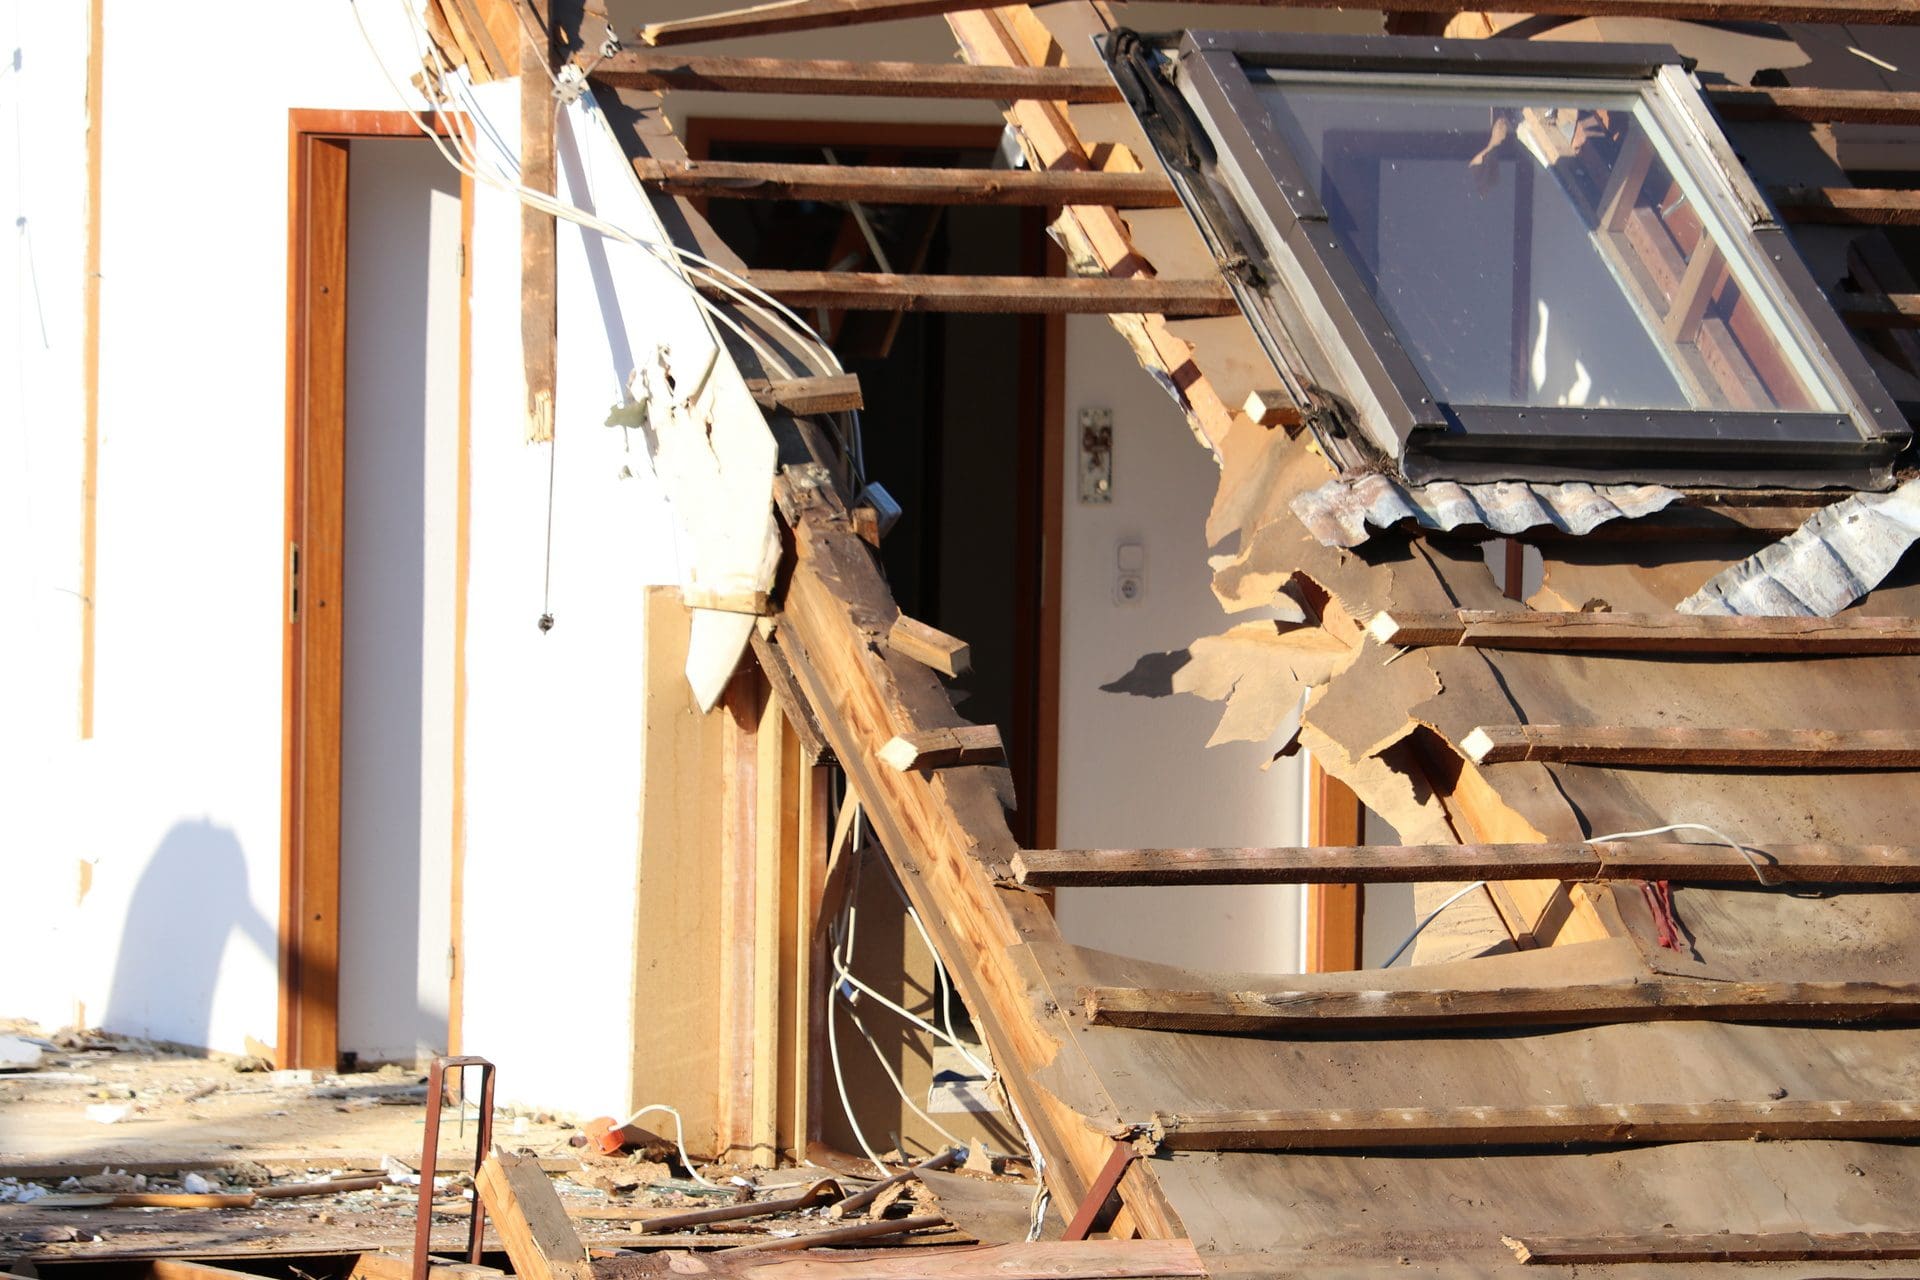 Abriss oder Sanierung? - Wir vermitteln Schadensanierer / Sanierungsexperten für Gebäude (© sunday pictures / stock.adobe.com)